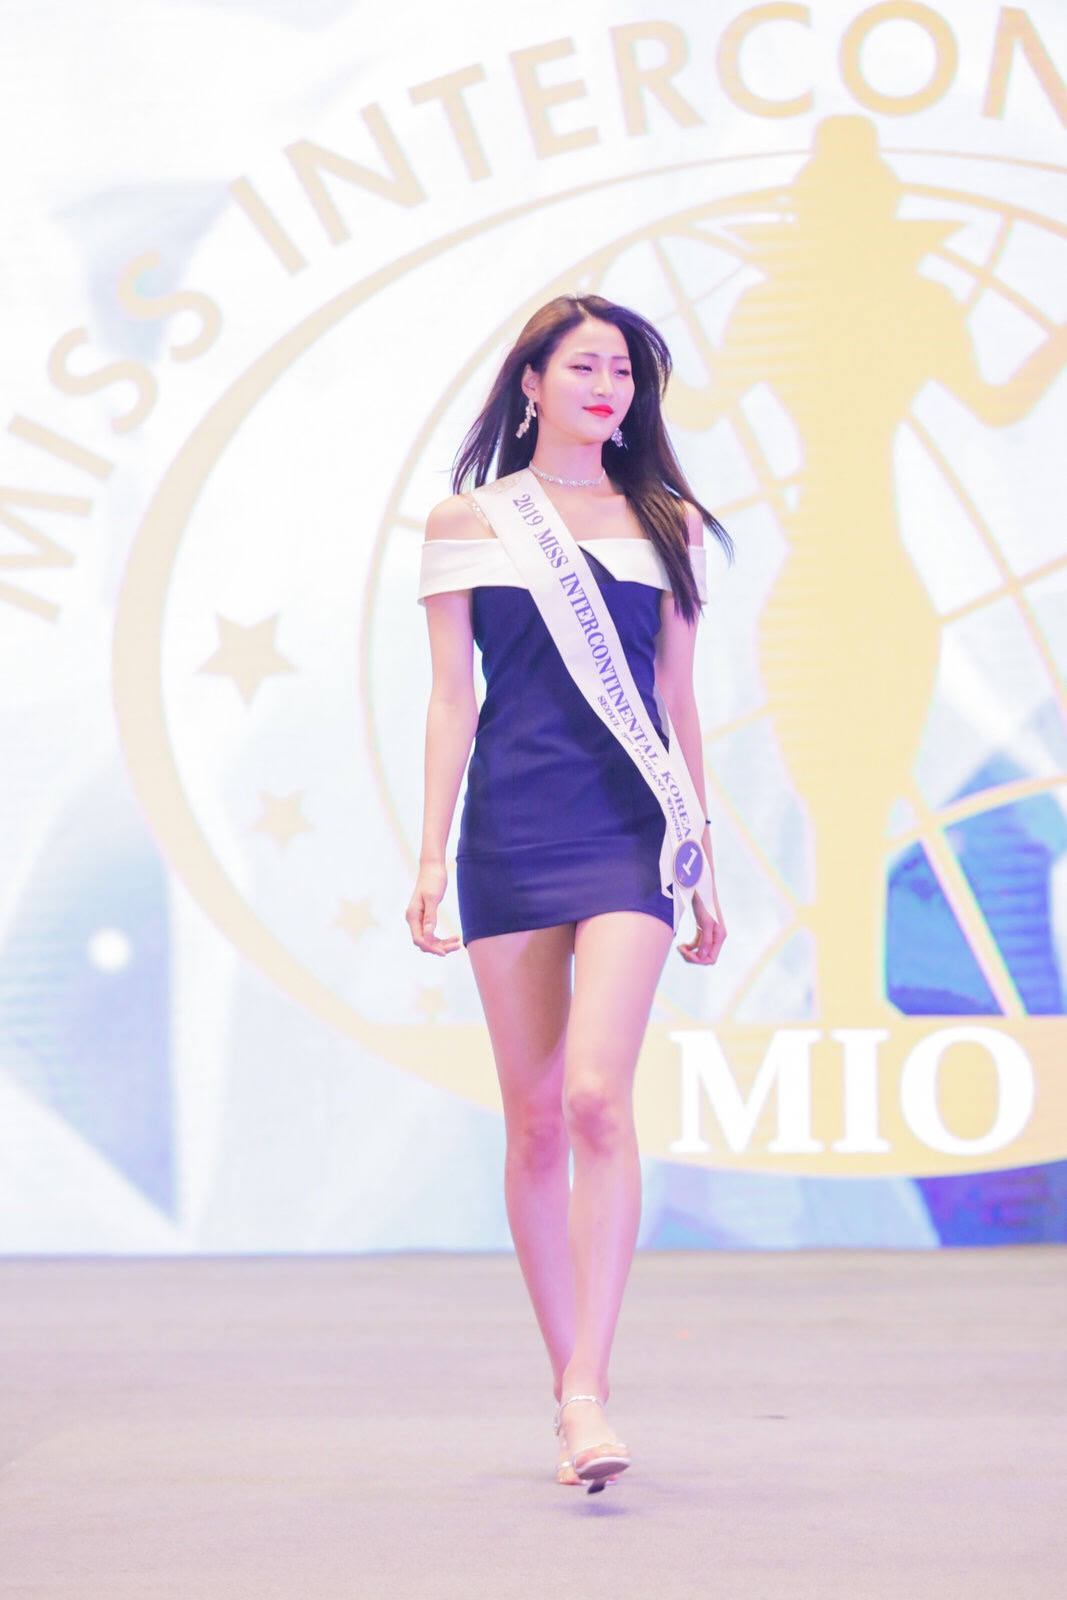 作为韩国最顶尖的选美赛事,韩国洲际小姐选拔大会发展至今已有50年